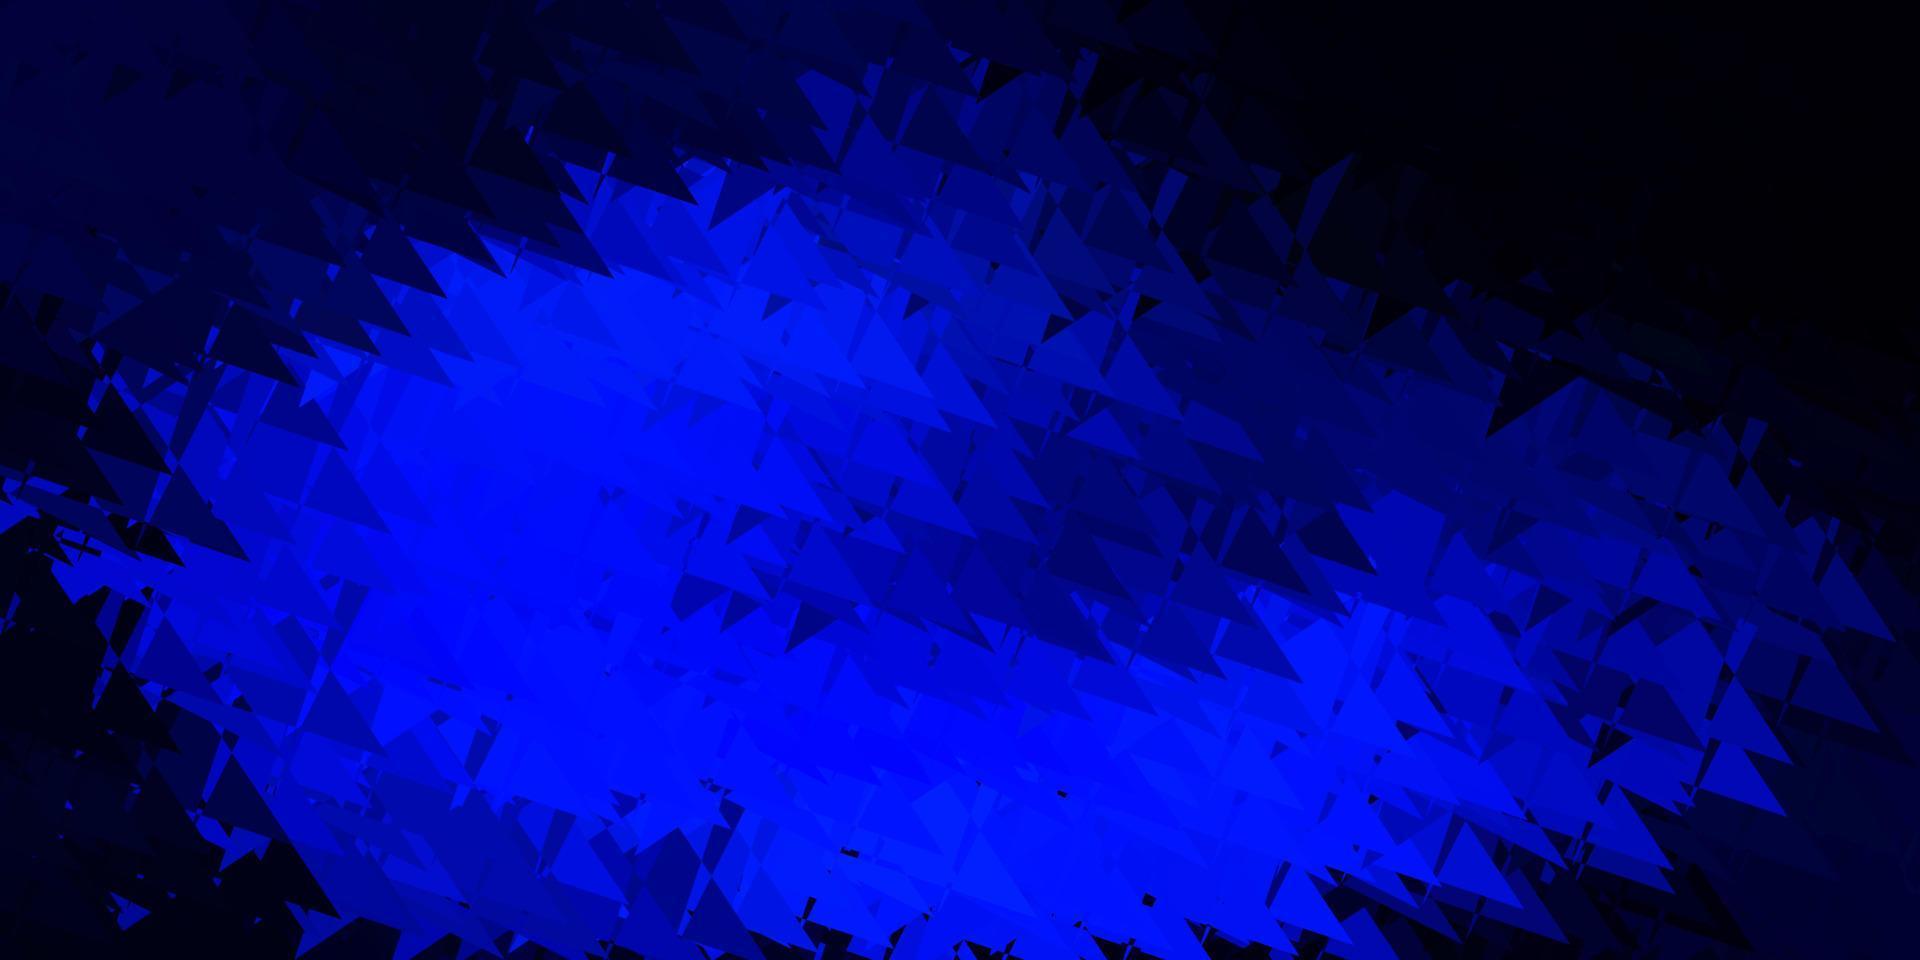 mörkblå vektorbakgrund med månghörniga former. vektor